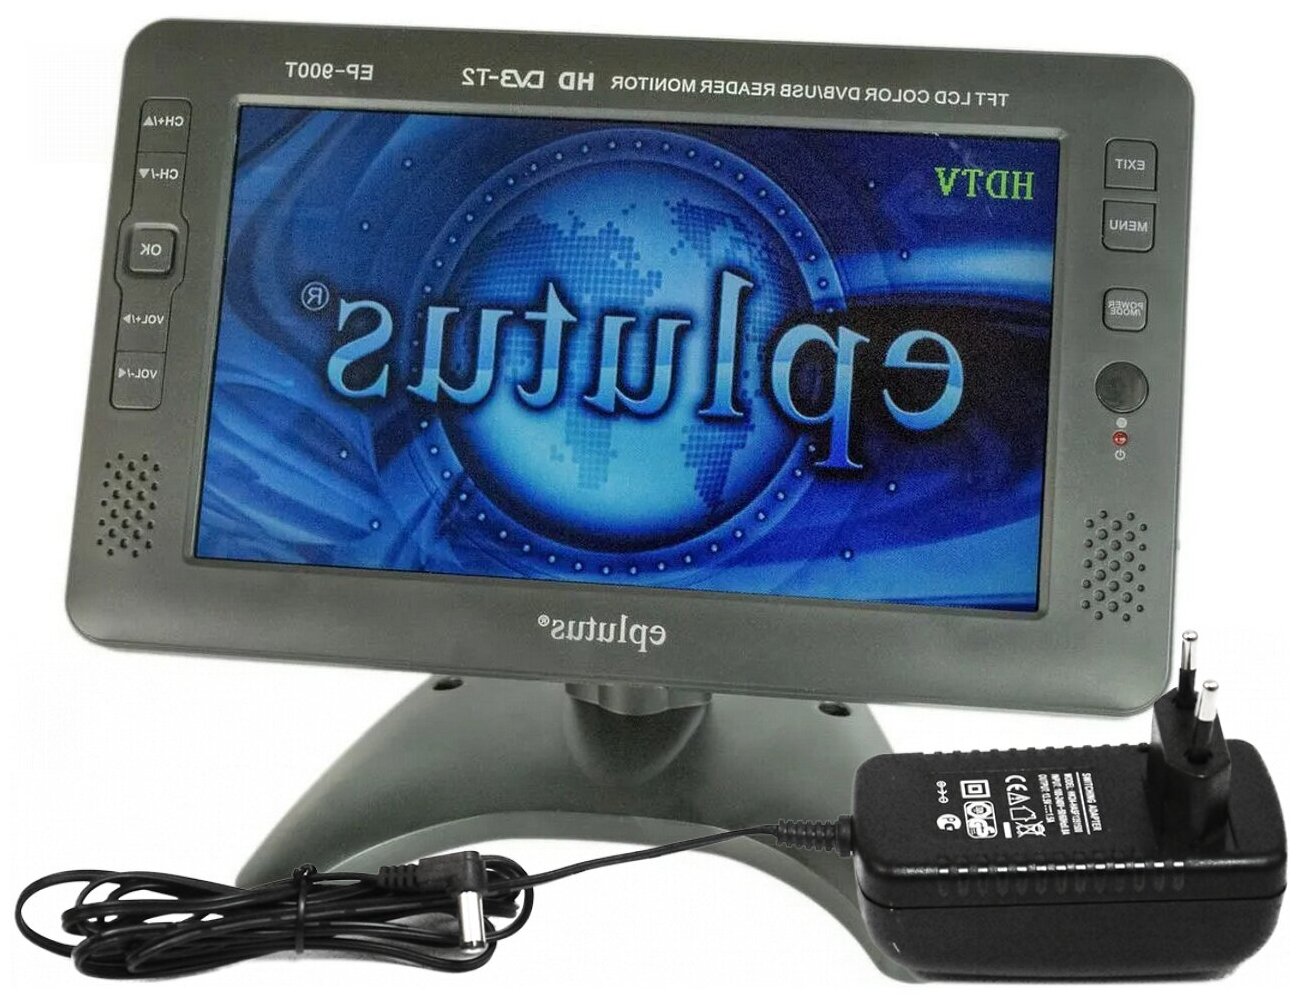 Портативный телевизор Эплутус EP-900T (F1420EU) 9 DVB-T2 с встроенным аккумулятором - цифровой ЖК - телевизор с экраном 9